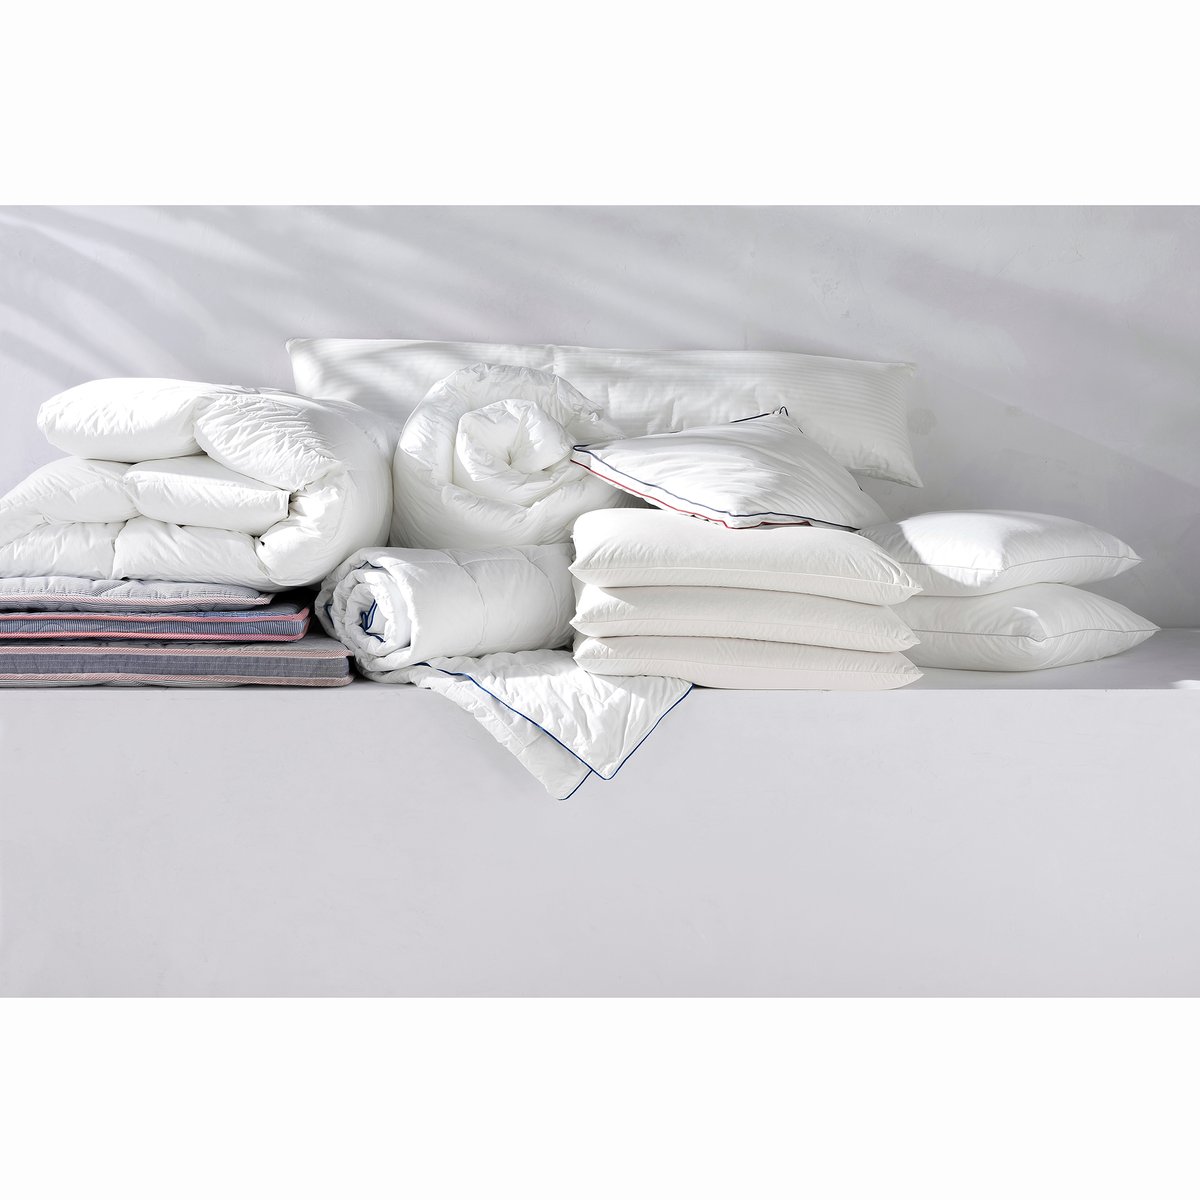 Одеяло LaRedoute Синтетическое Banket 260 x 240 см белый, размер 260 x 240 см - фото 2